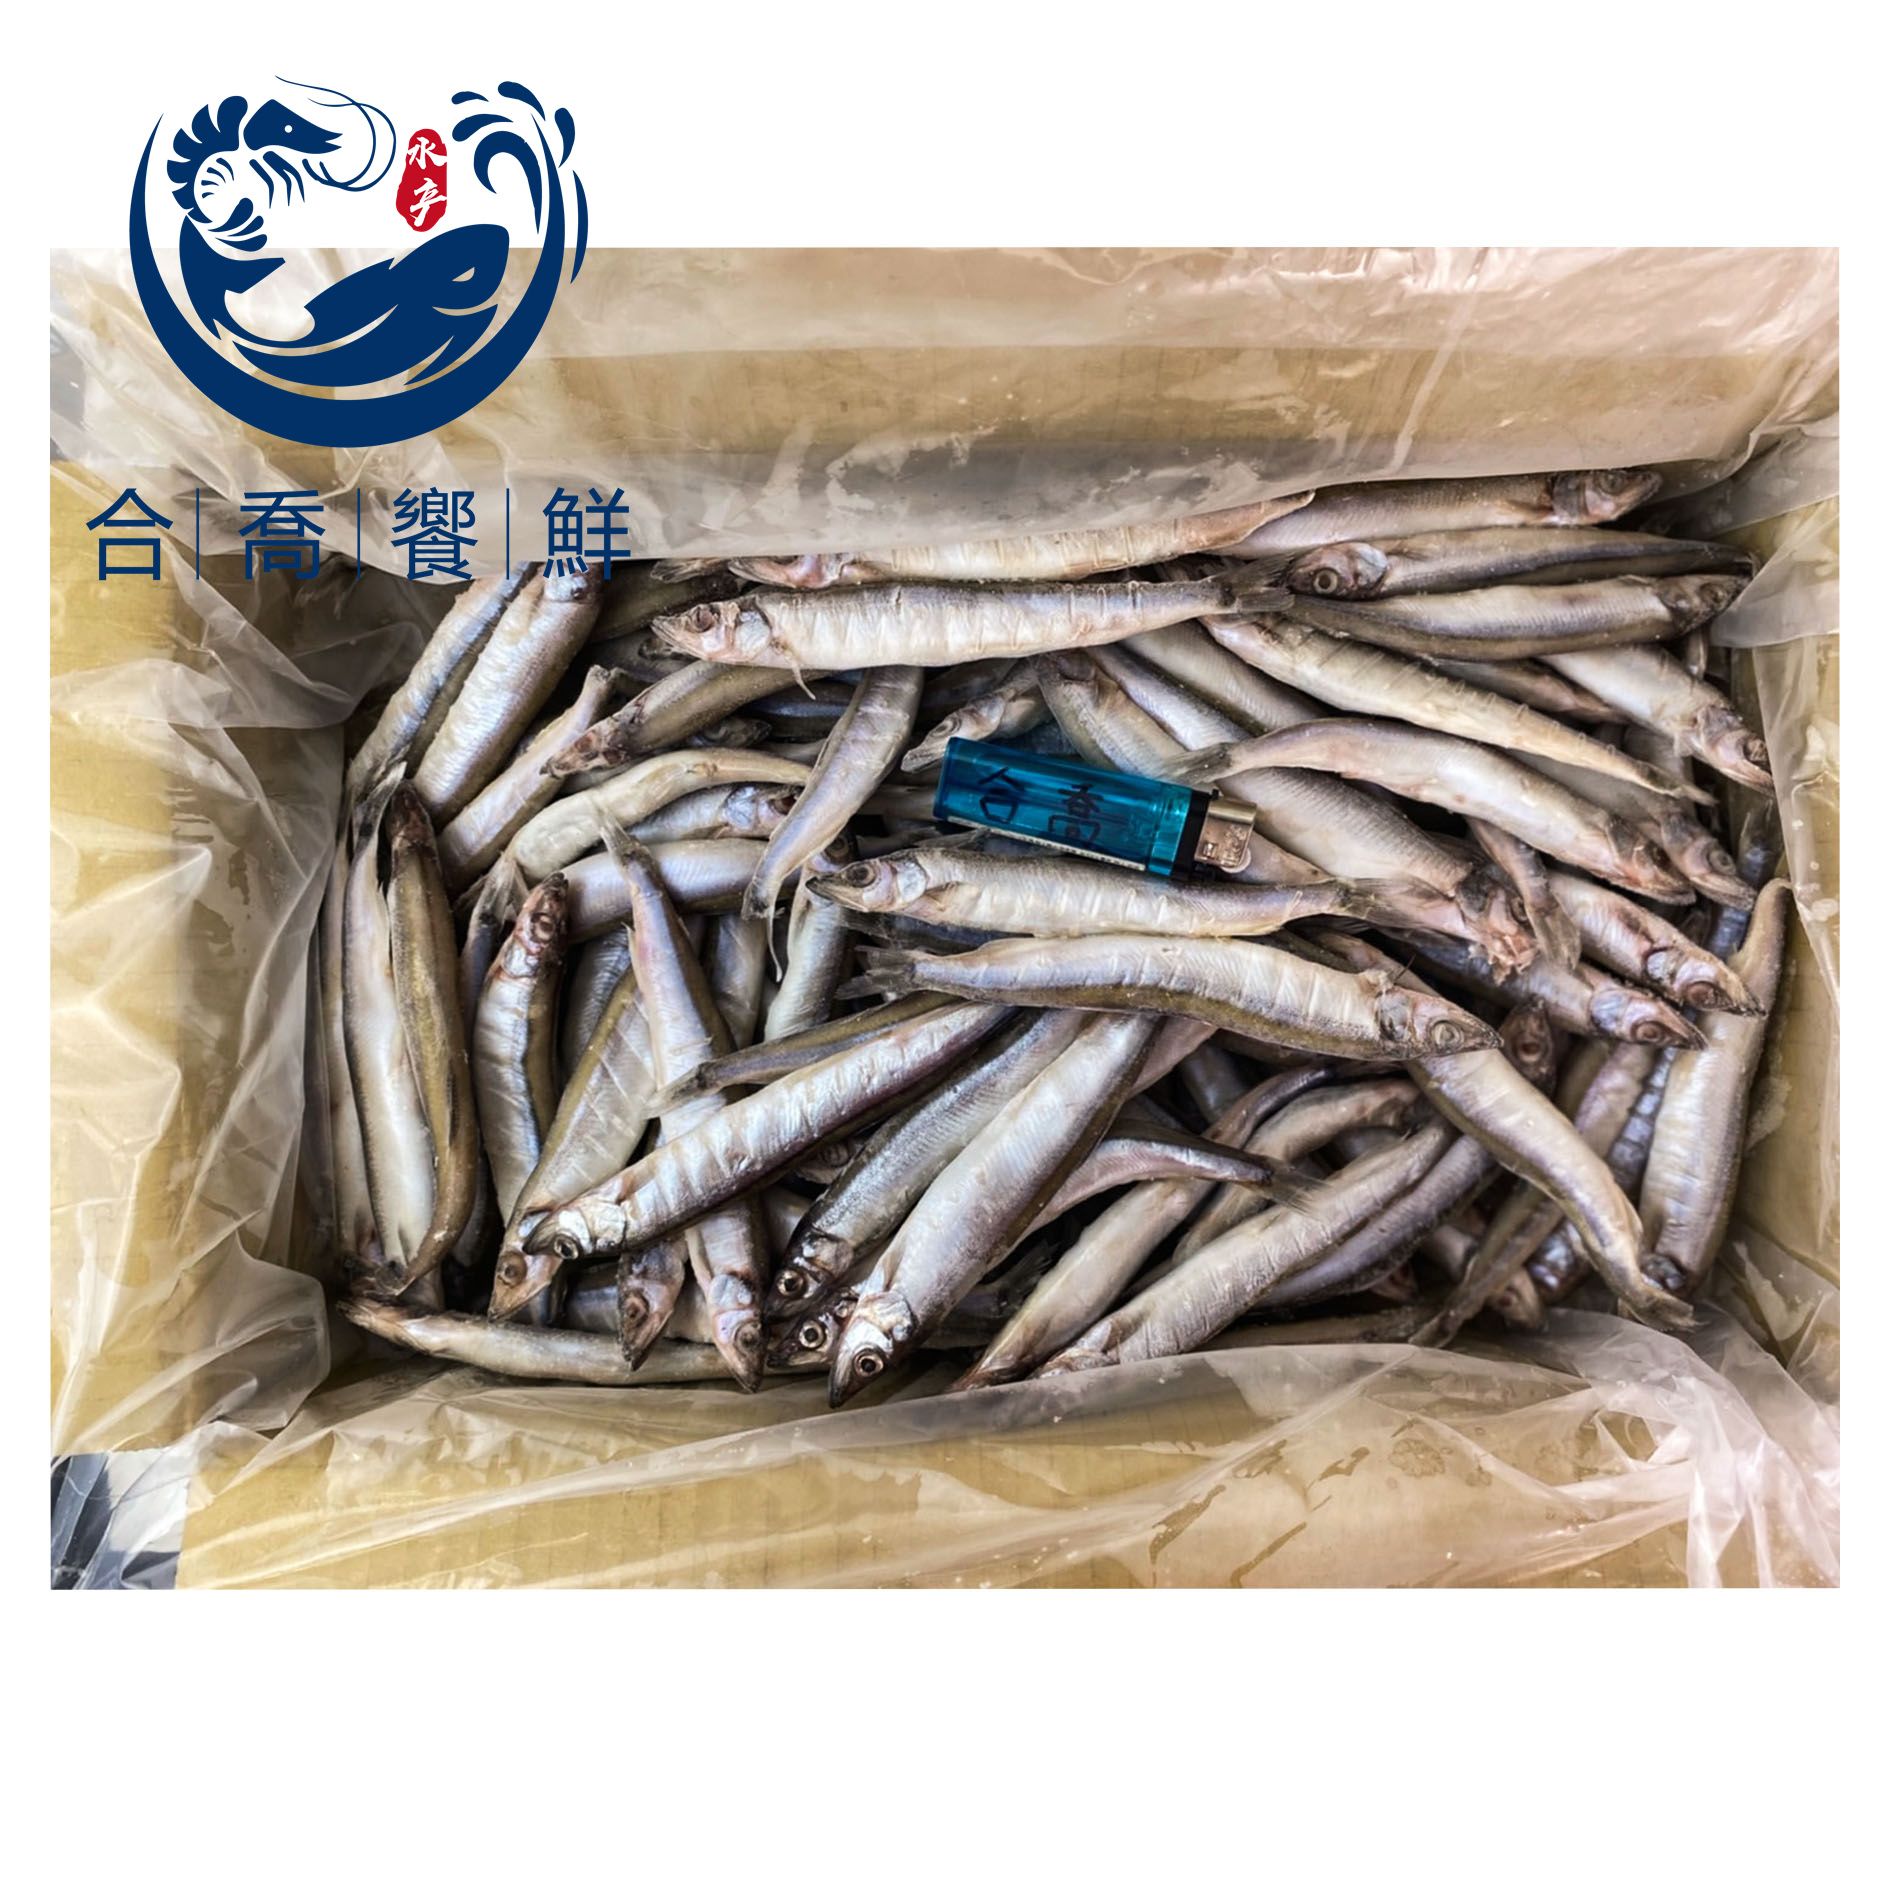 【合喬饗鮮】-單凍柳葉魚3kg/箱 /燒烤/炸物/海鮮/魚類/首購滿999再送保冰袋